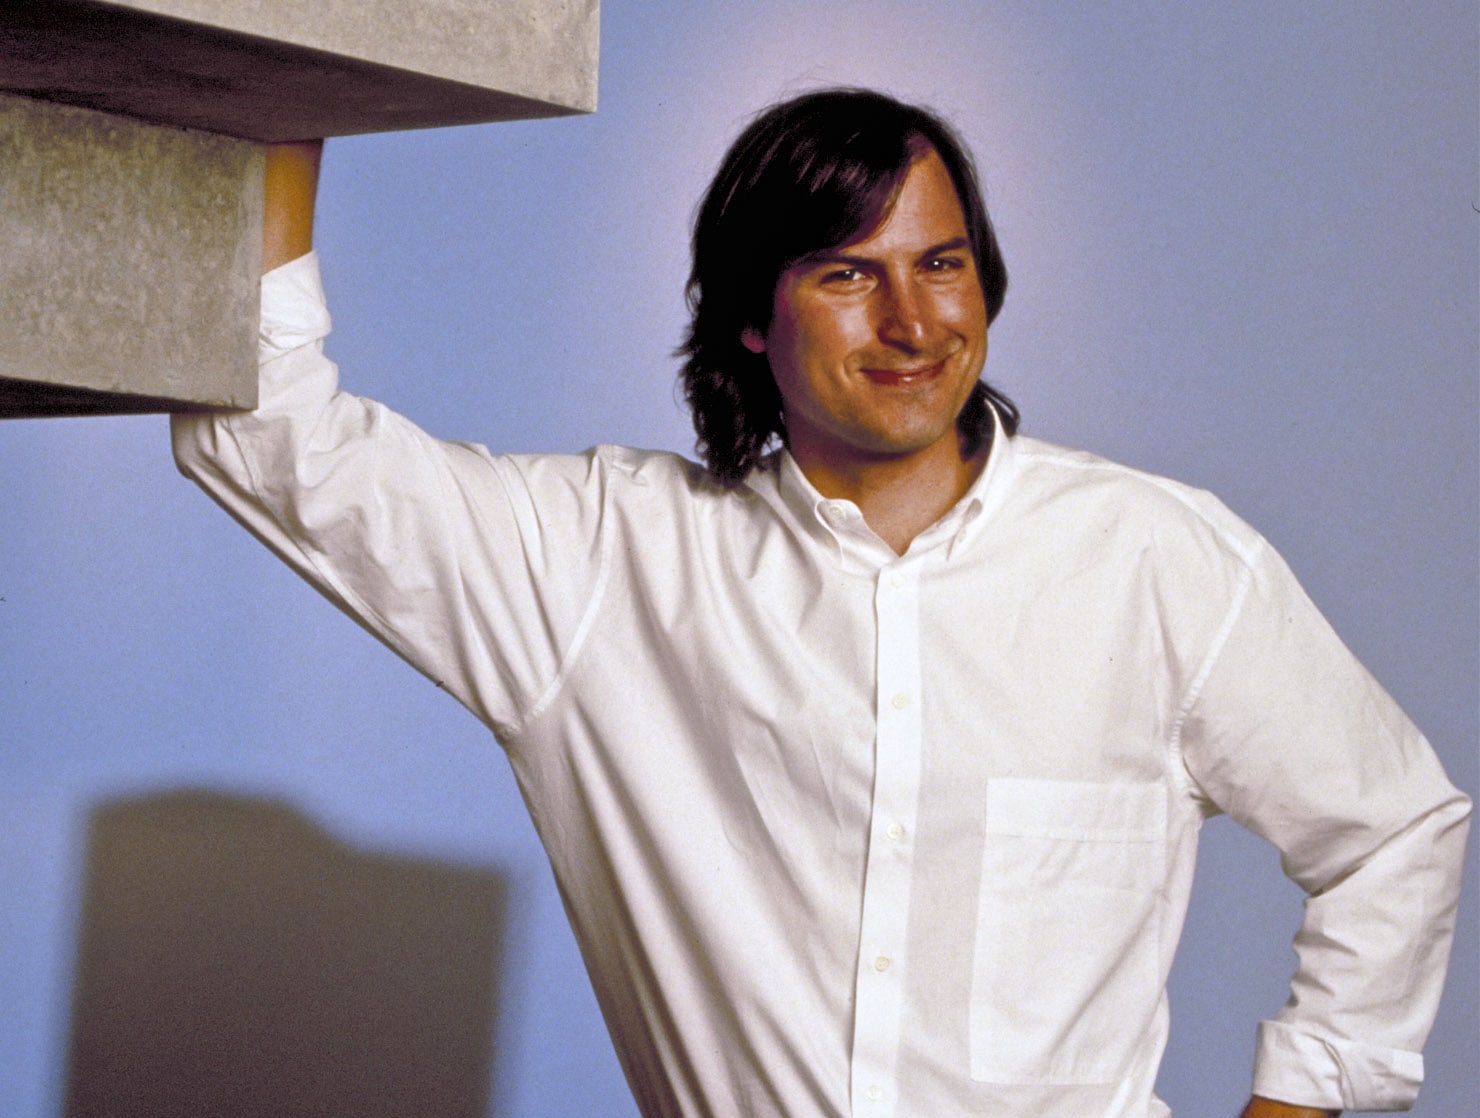 Doug Menuez Steve Jobs